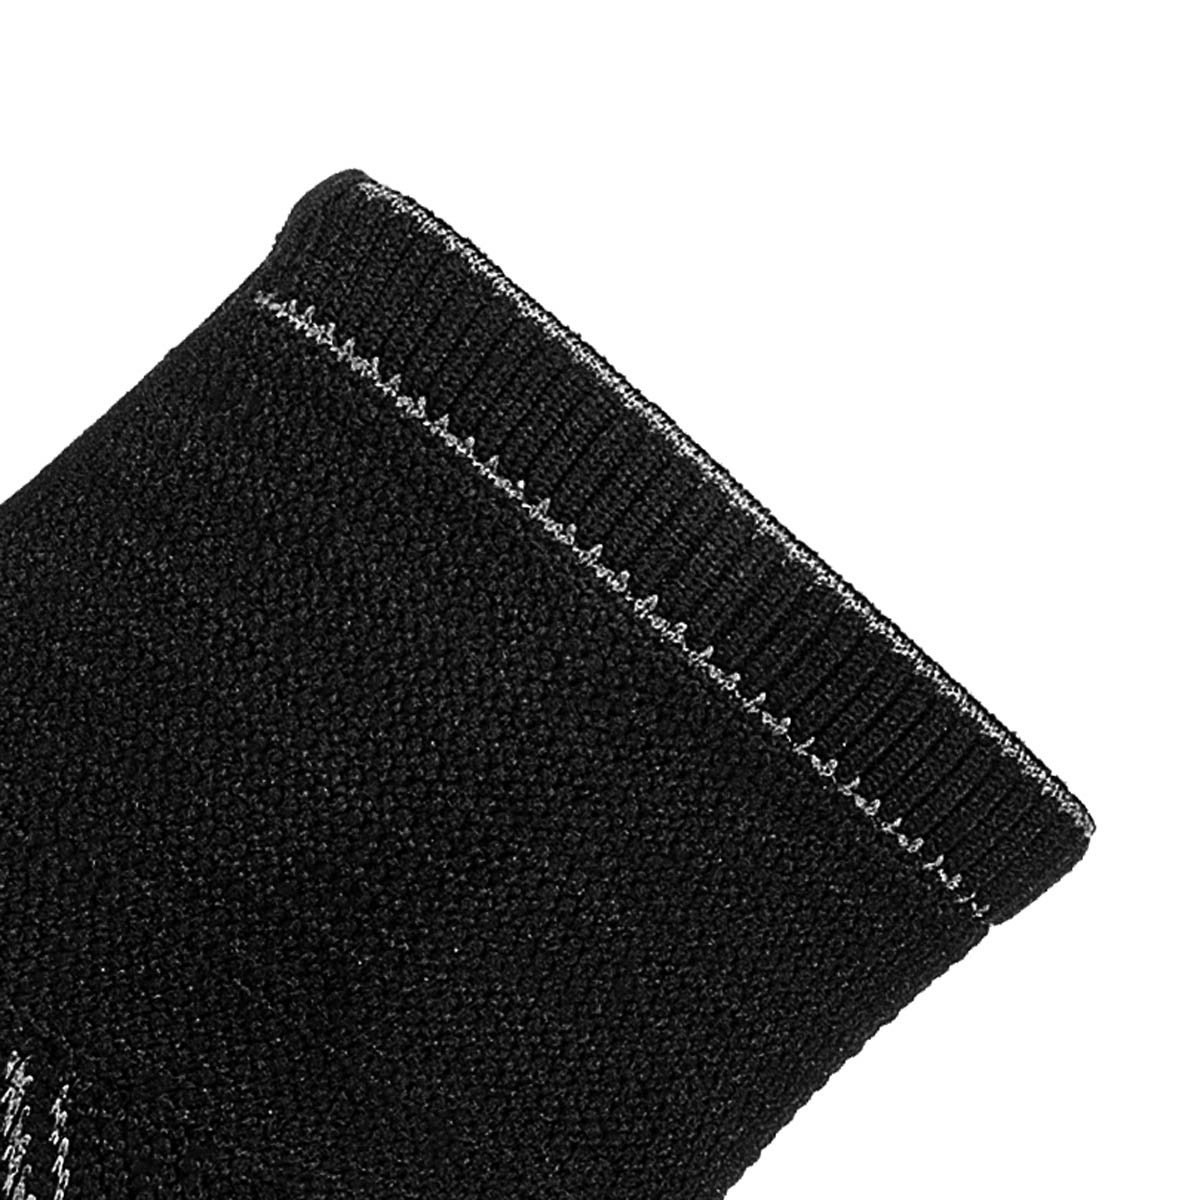 Tornozeleira de Compressão Sense Knit 3D Alasca:Preto/P/Unissex - 5